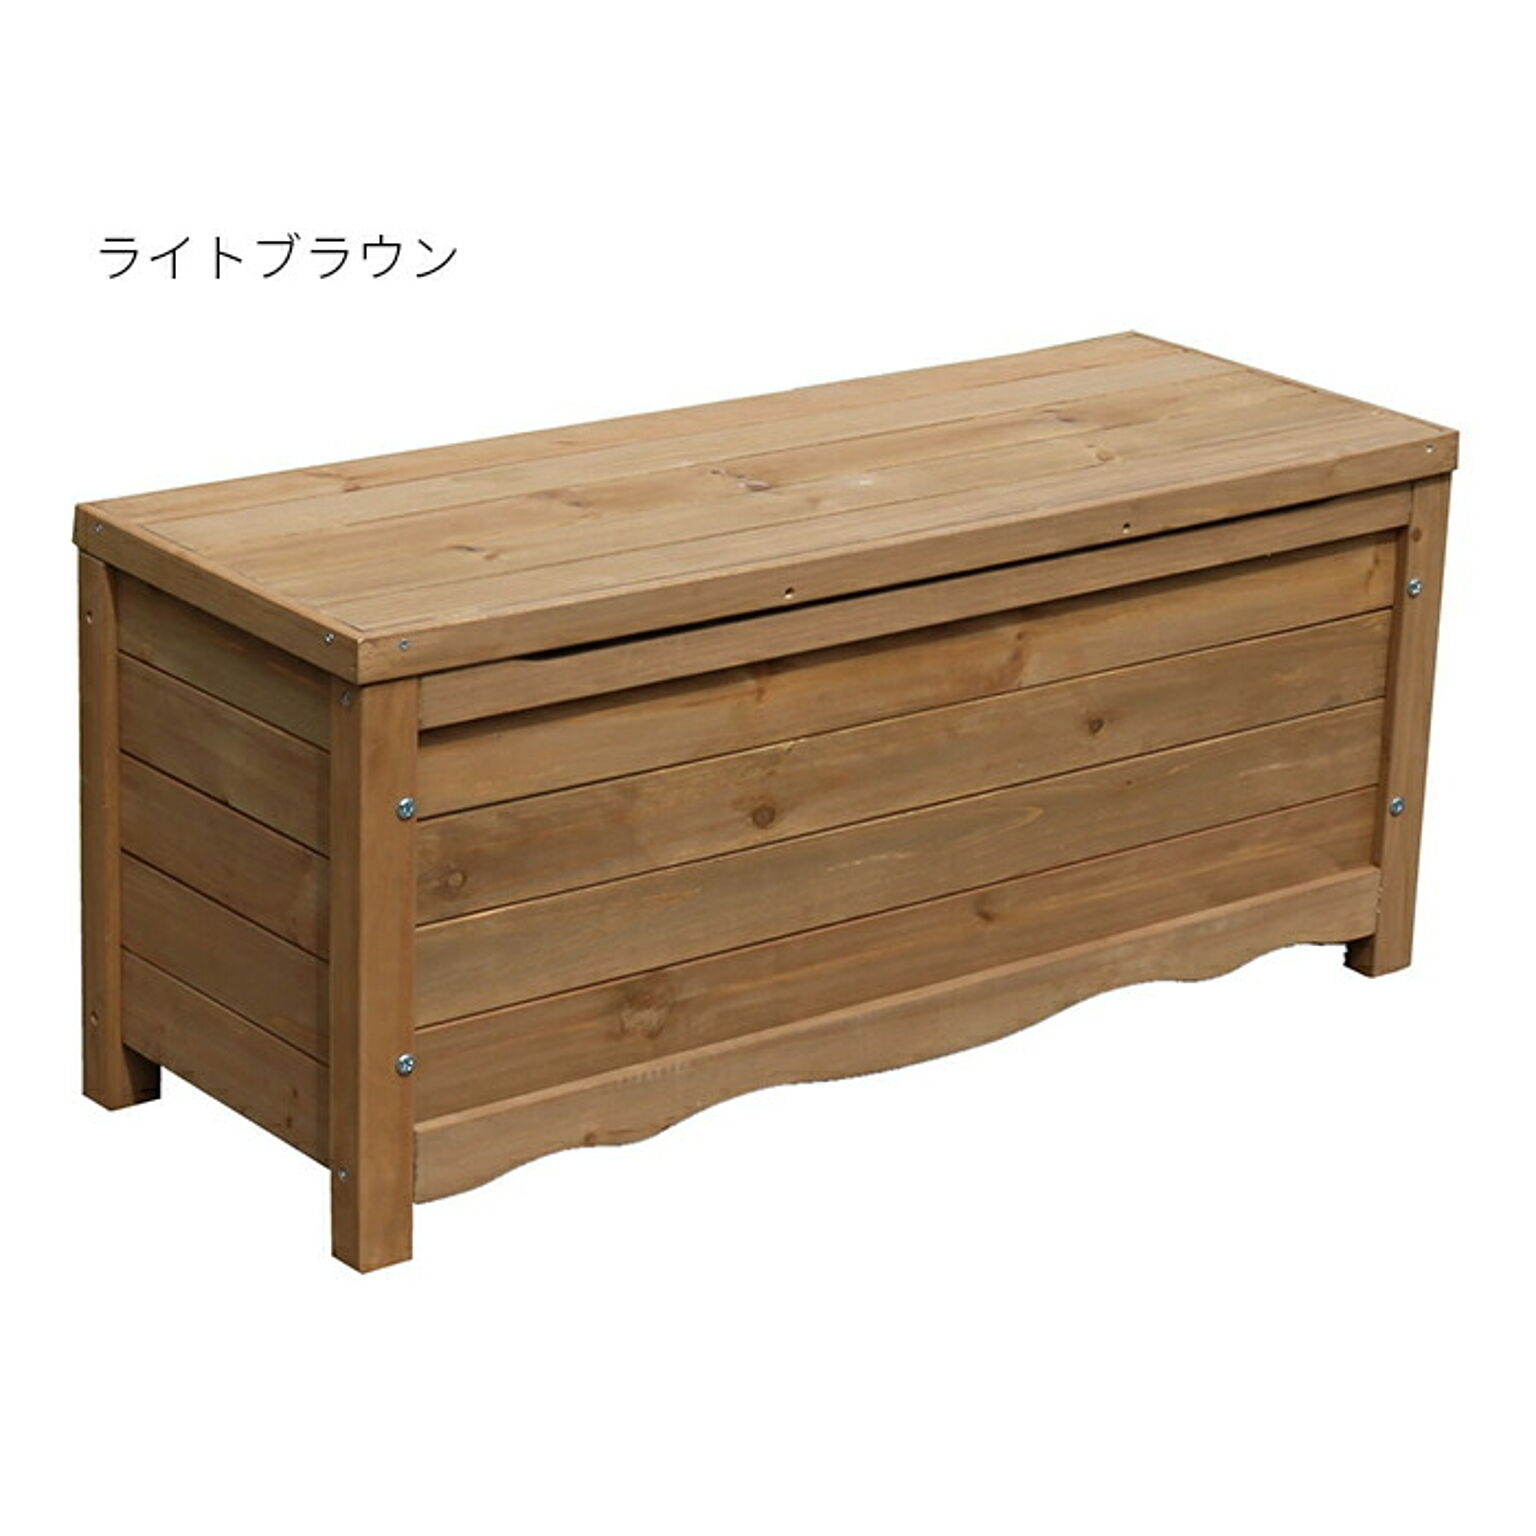 収納箱 組立式 天然木製ボックスベンチ コンパクト BB-W90 幅900x奥行330x高さ405mm 住まいスタイル